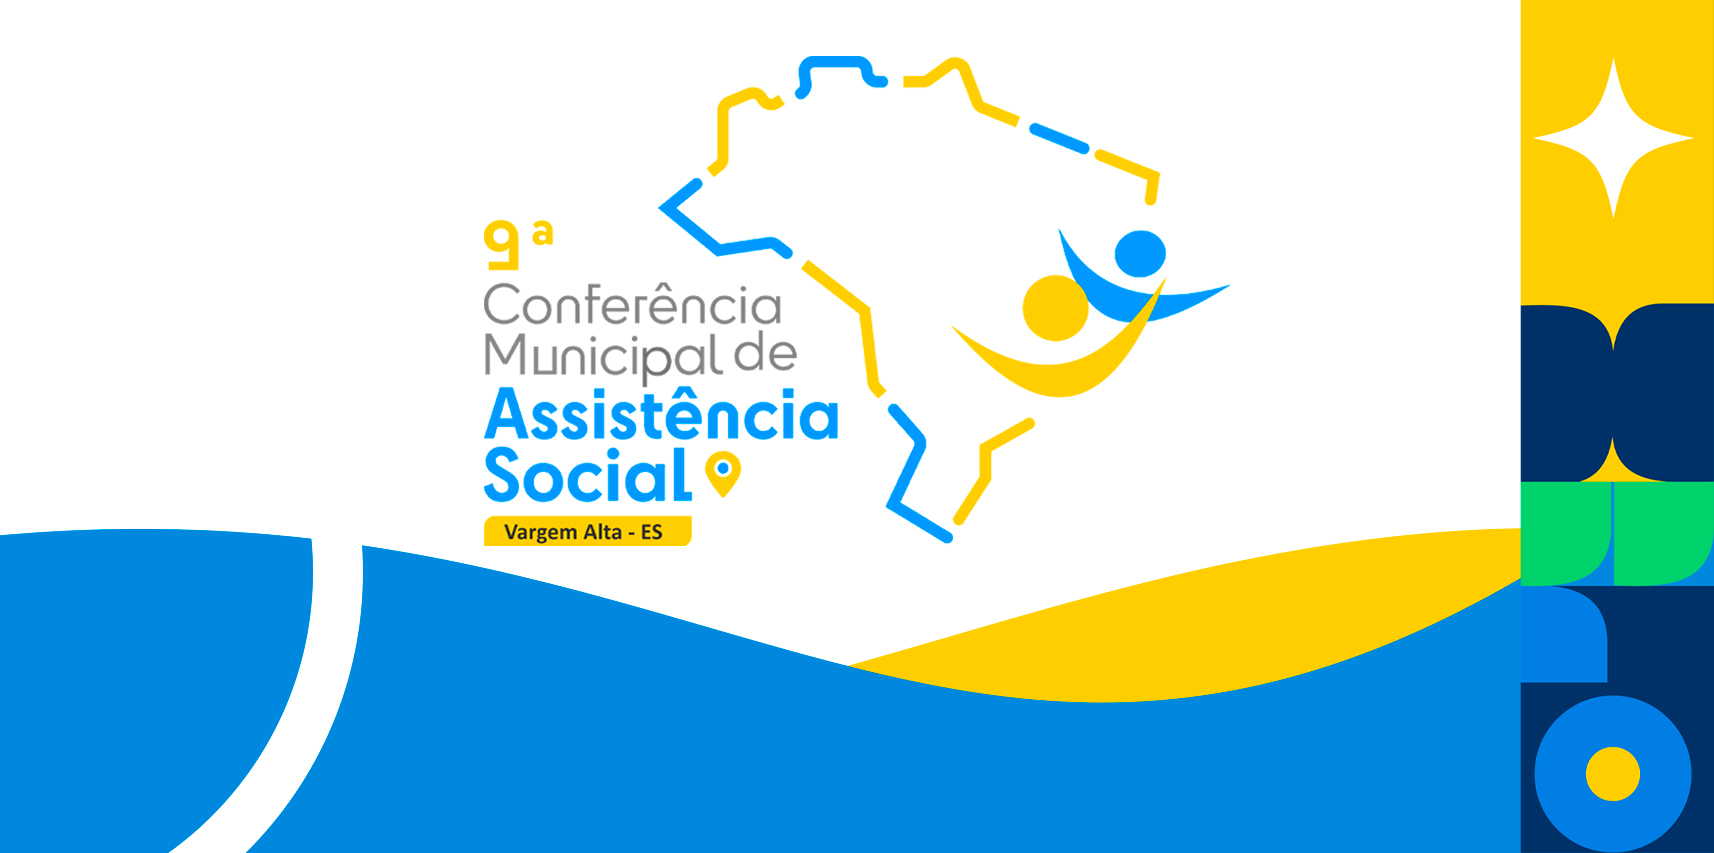 Conferência de Assistência Social de Vargem Alta acontece na próxima quarta-feira (28)